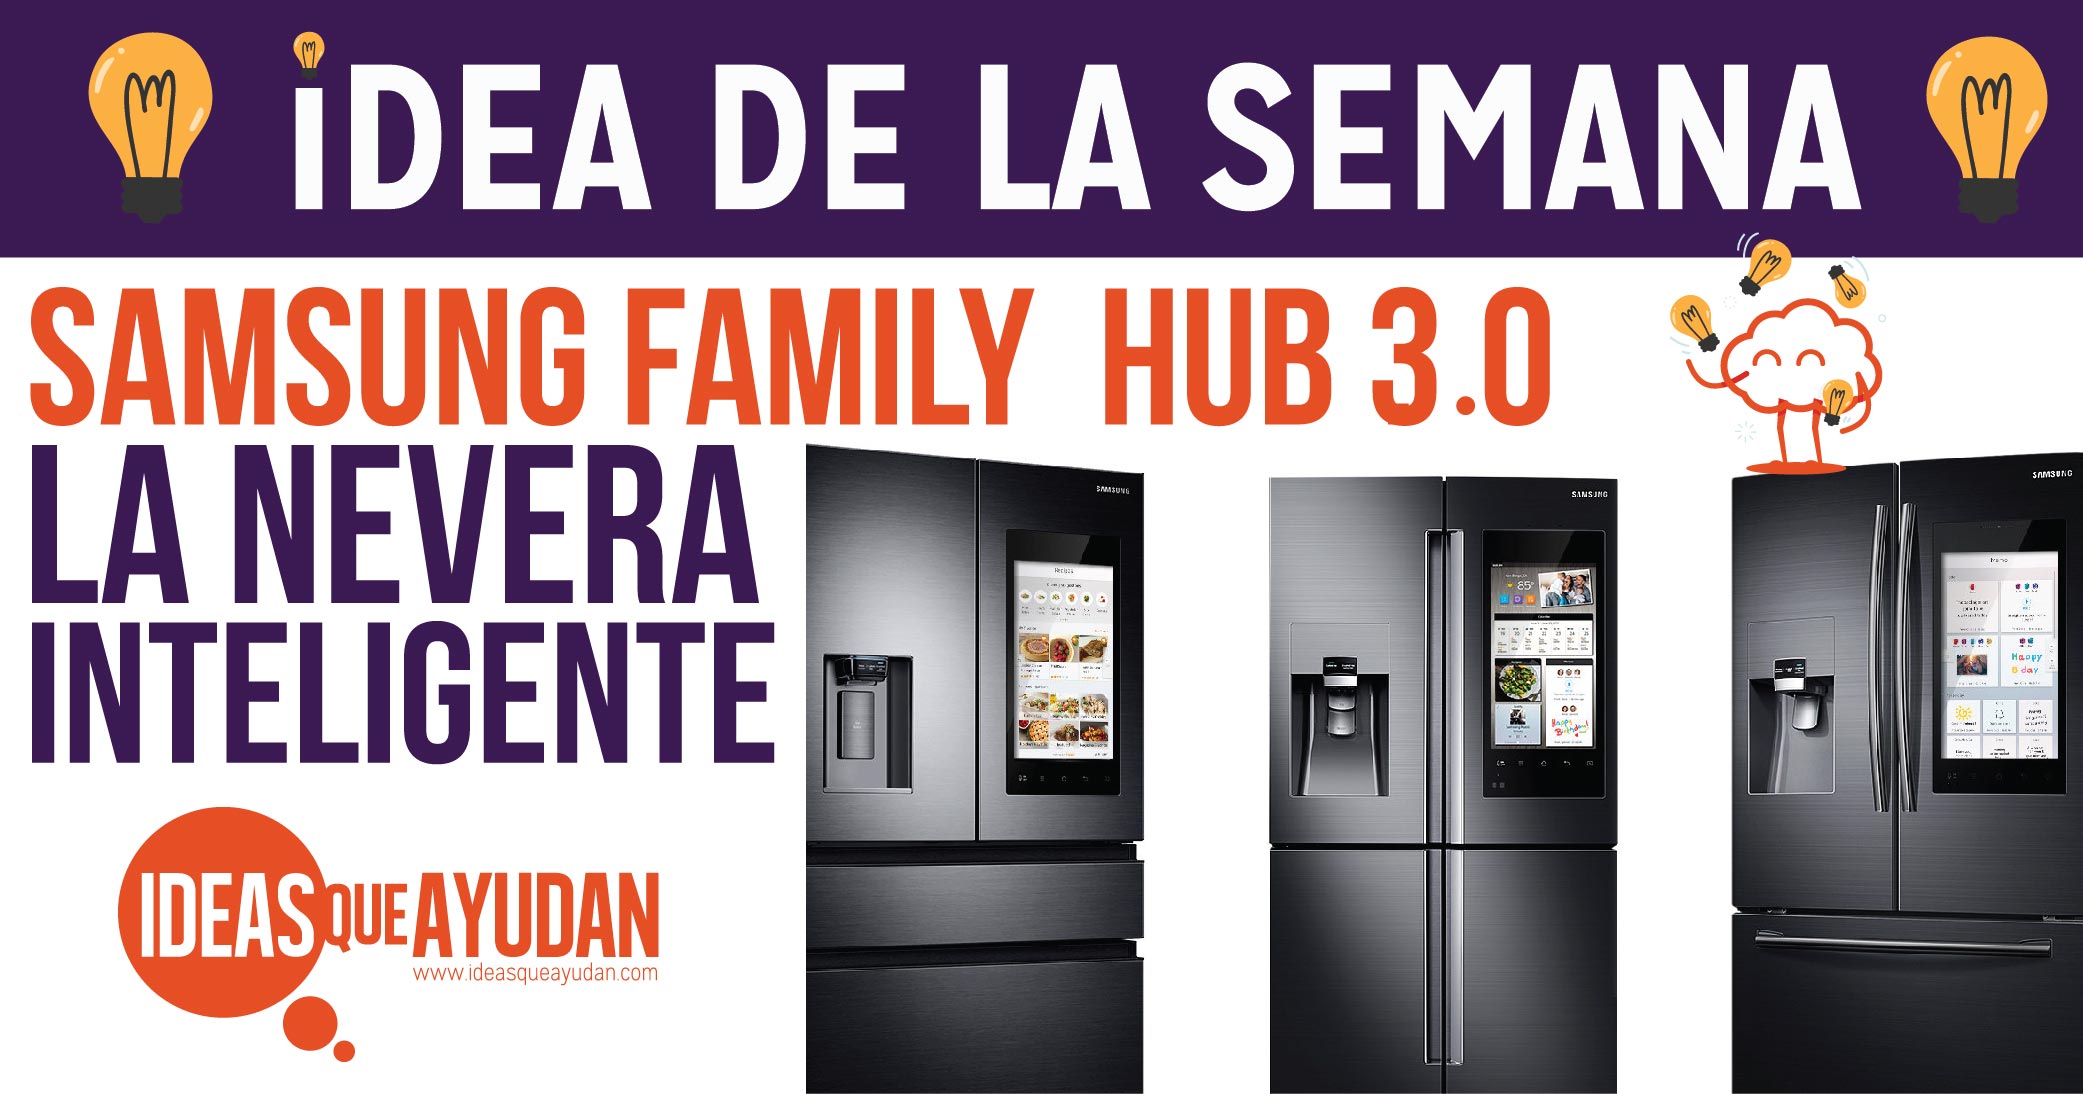 Samsung family hub 3.0, el refrigerador inteligente